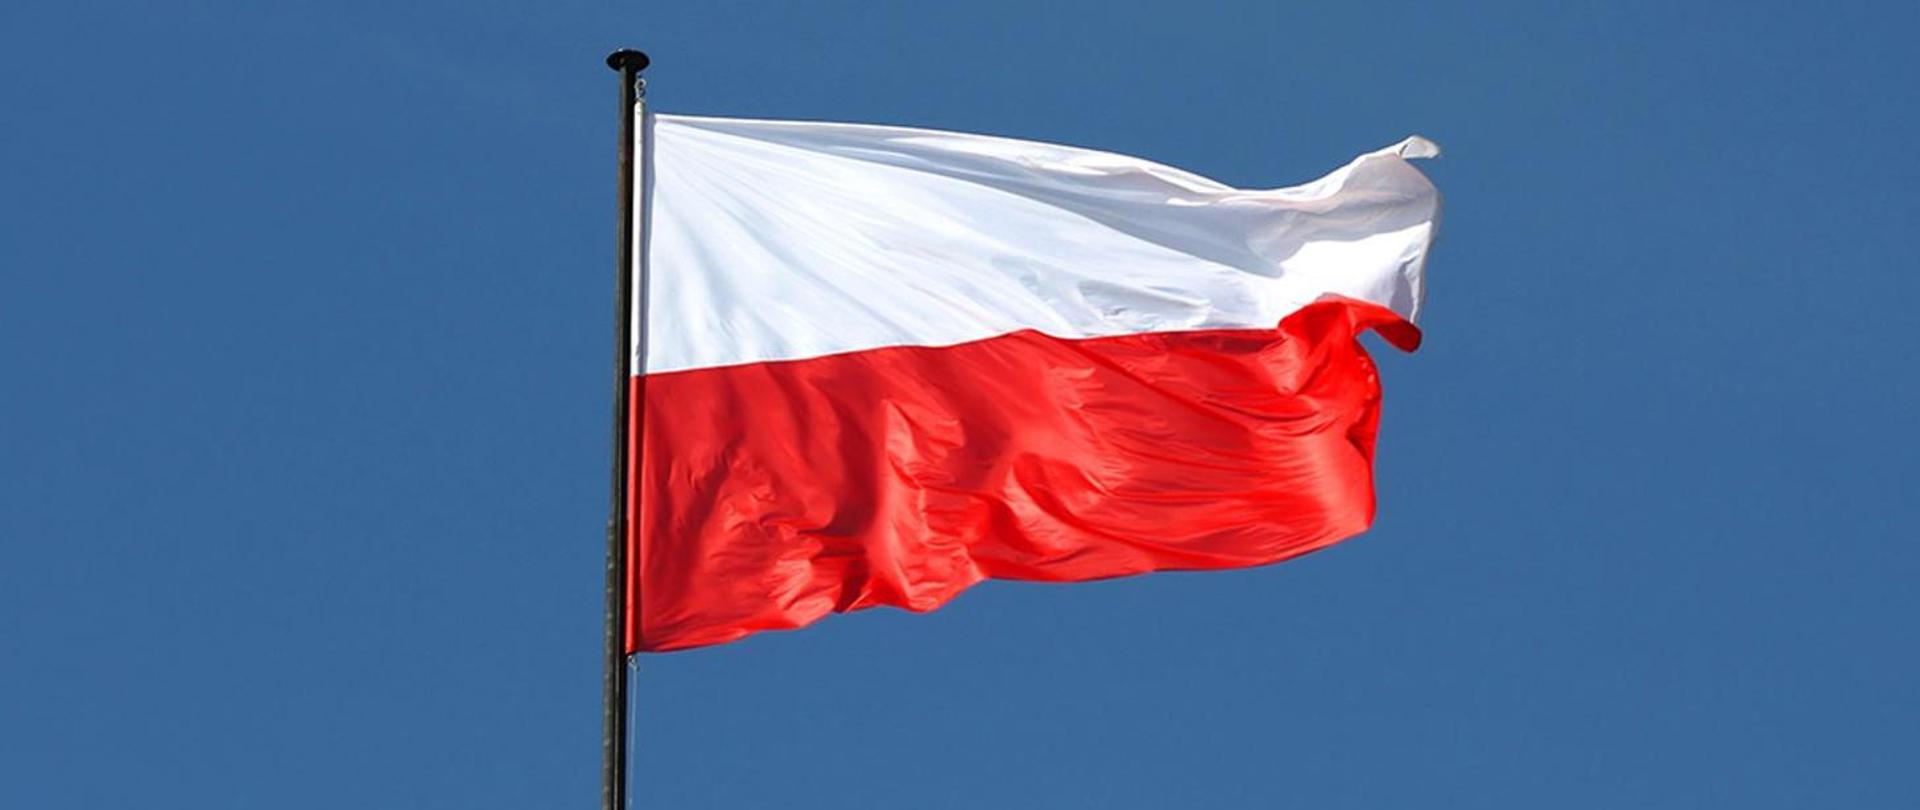 Na zdjęciu widzimy flagę polską. Piękna biało-czerwona flaga zawieszona na maszcie powiewa na wietrze na niebieskim tle.